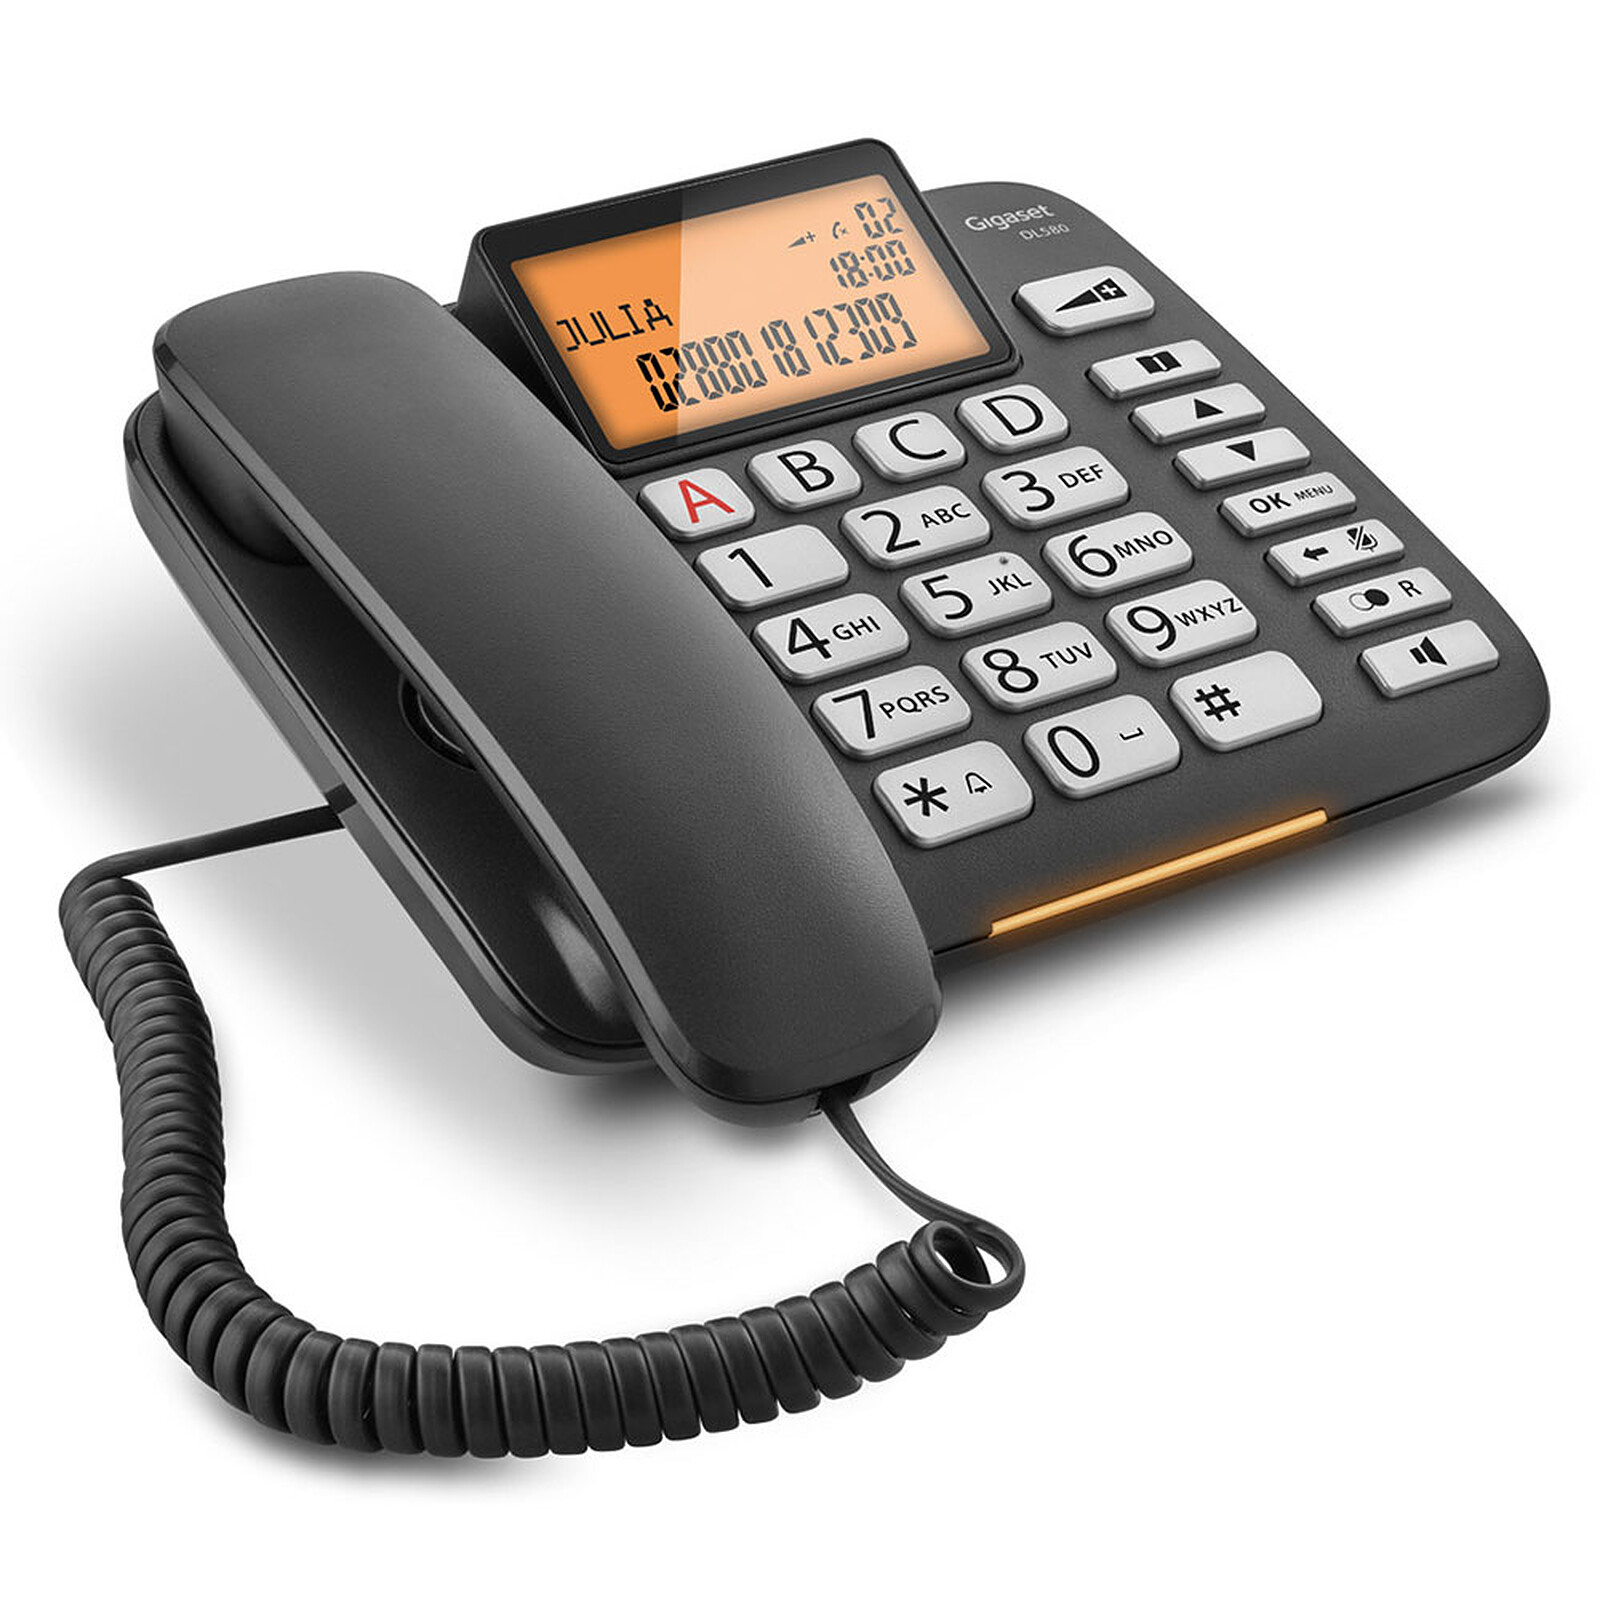 Téléphone Gigaset DL580 Facilité d’utilisation